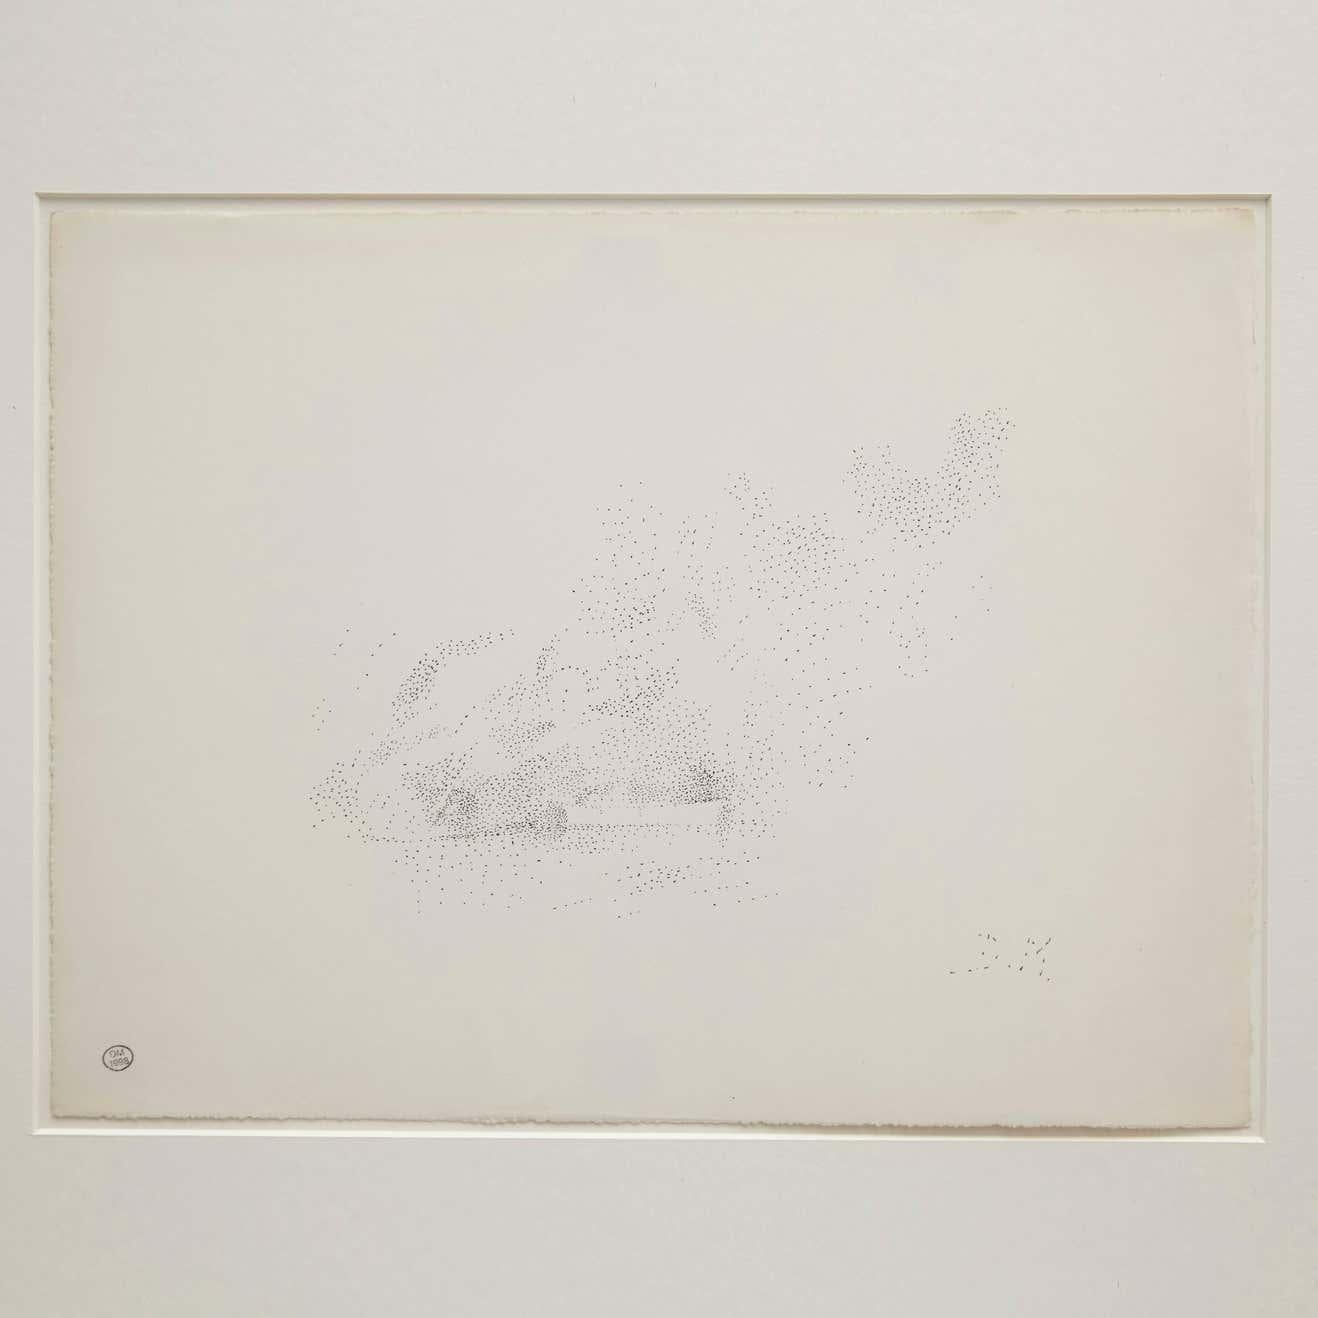 Pointillistische Komposition von Dora Maar, um 1960.

Echtheitsstempel der Auktion, die 1998 in Paris stattfand.
Schwarze Tinte auf cremeweißem Papier.
20. Jahrhundert, undatiert.


In gutem Originalzustand, mit geringen alters- und